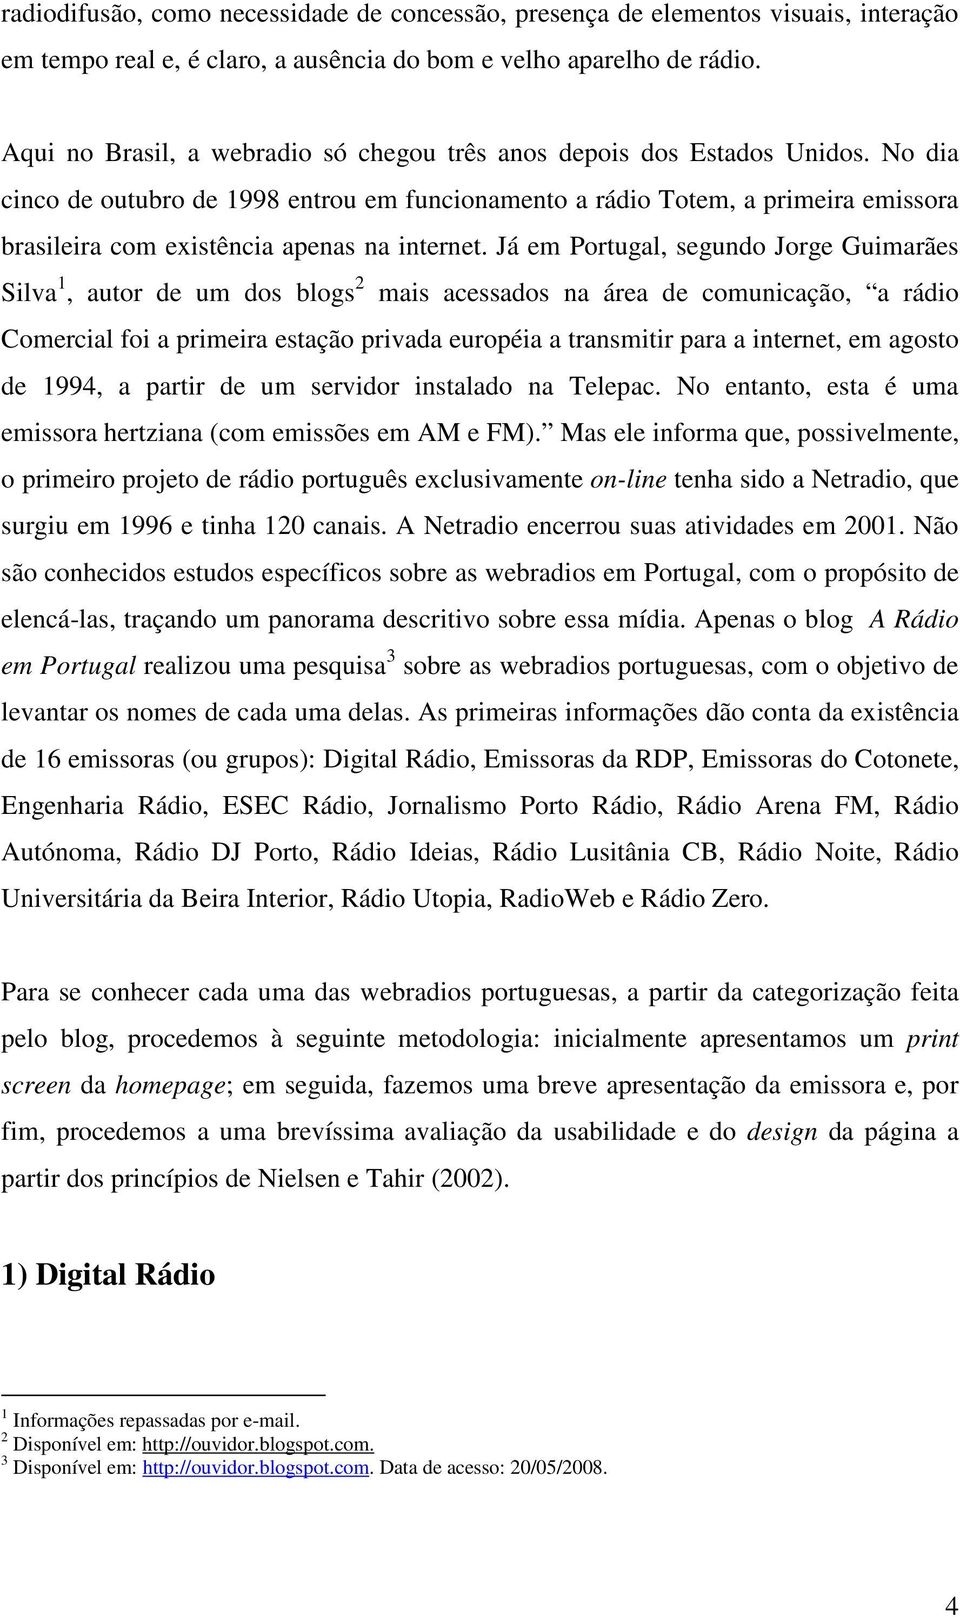 No dia cinco de outubro de 1998 entrou em funcionamento a rádio Totem, a primeira emissora brasileira com existência apenas na internet.